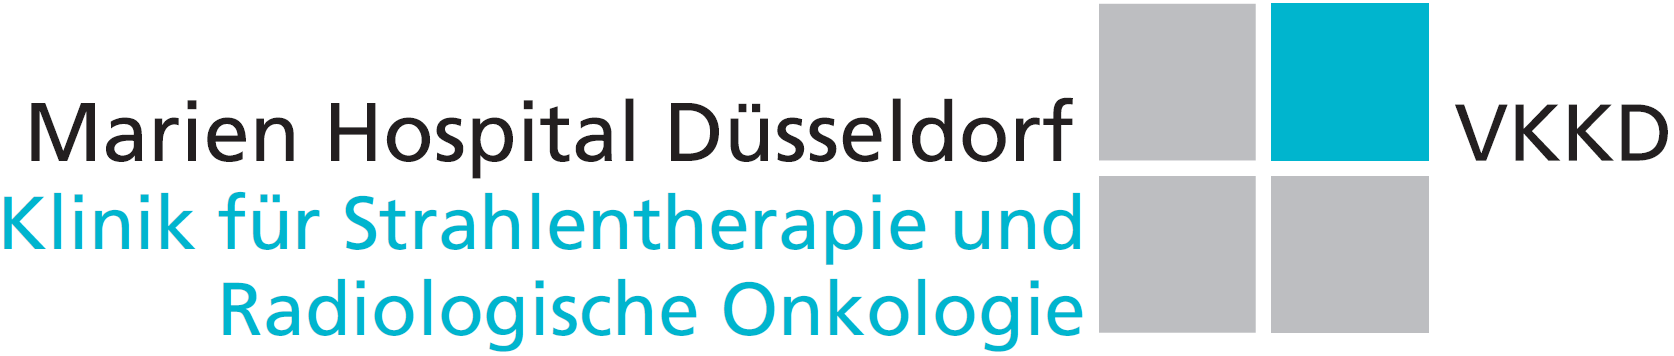 Marien Hospital Düsseldorf Klinik für Strahlentherapie und Radiologische Onkologie VKKD